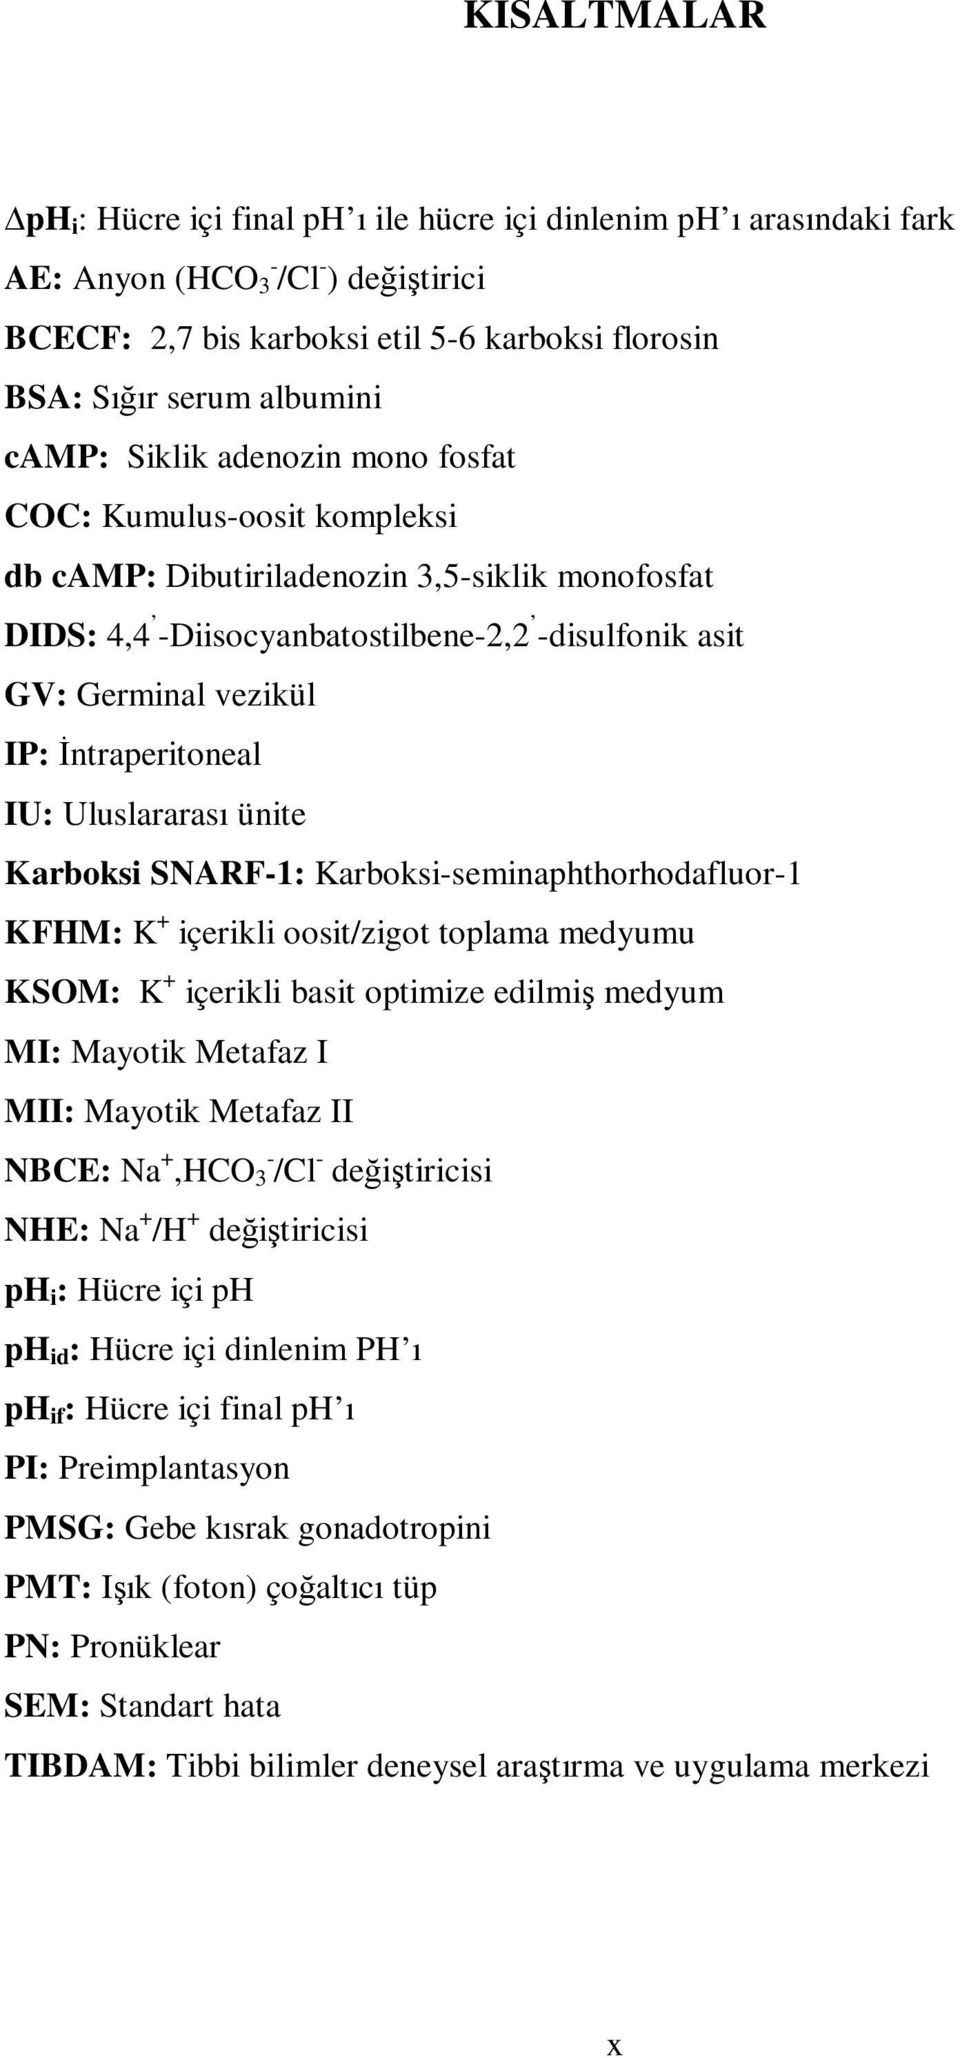 İntraperitoneal IU: Uluslararası ünite Karboksi SNARF-1: Karboksi-seminaphthorhodafluor-1 KFHM: K + içerikli oosit/zigot toplama medyumu KSOM: K + içerikli basit optimize edilmiş medyum MI: Mayotik